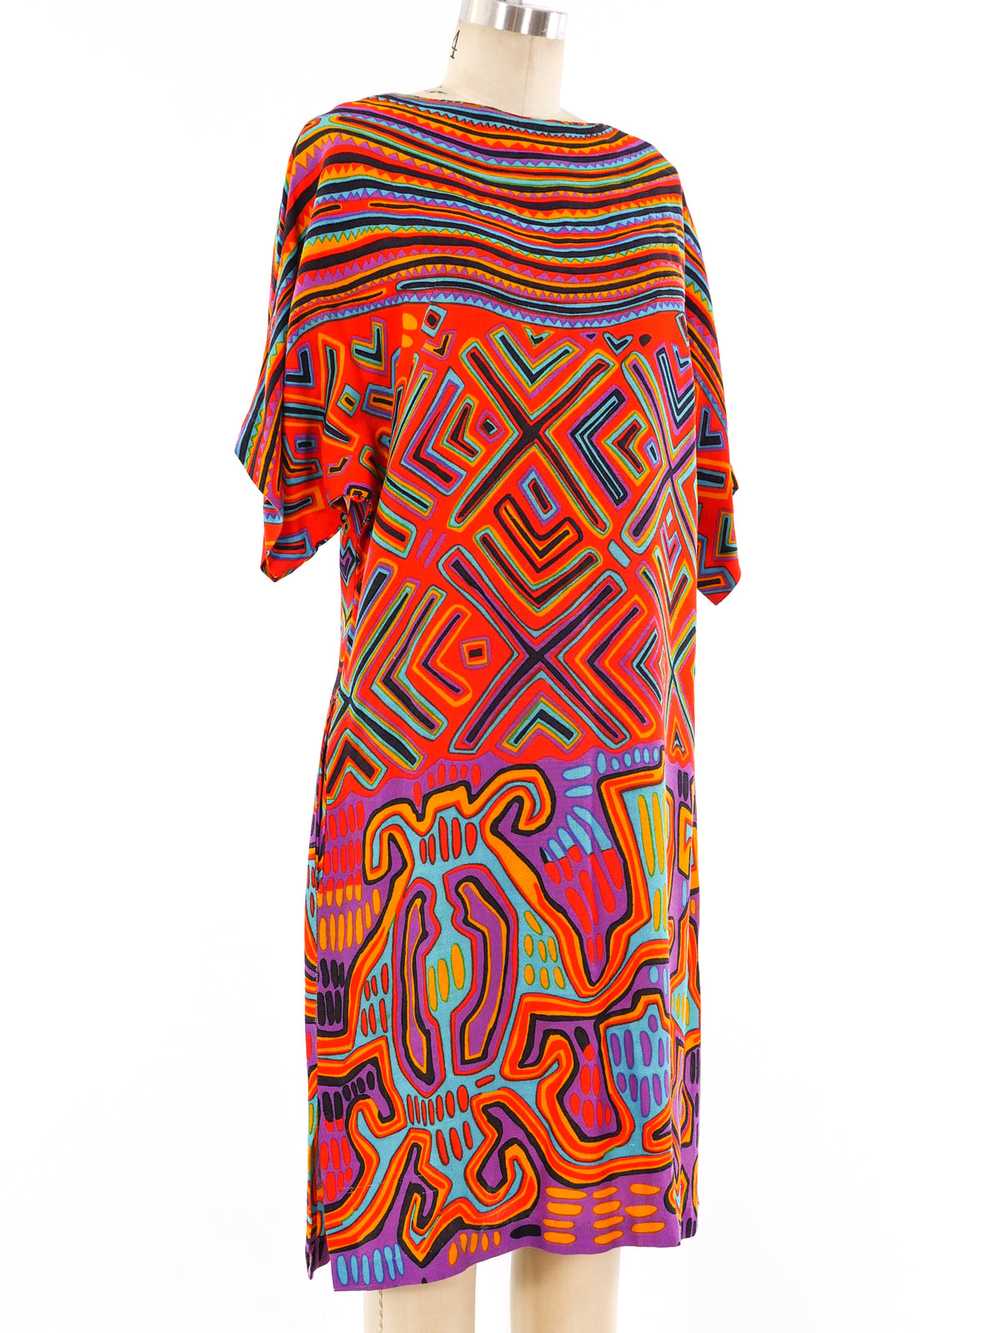 Mixed Print Rayon Dress - image 3